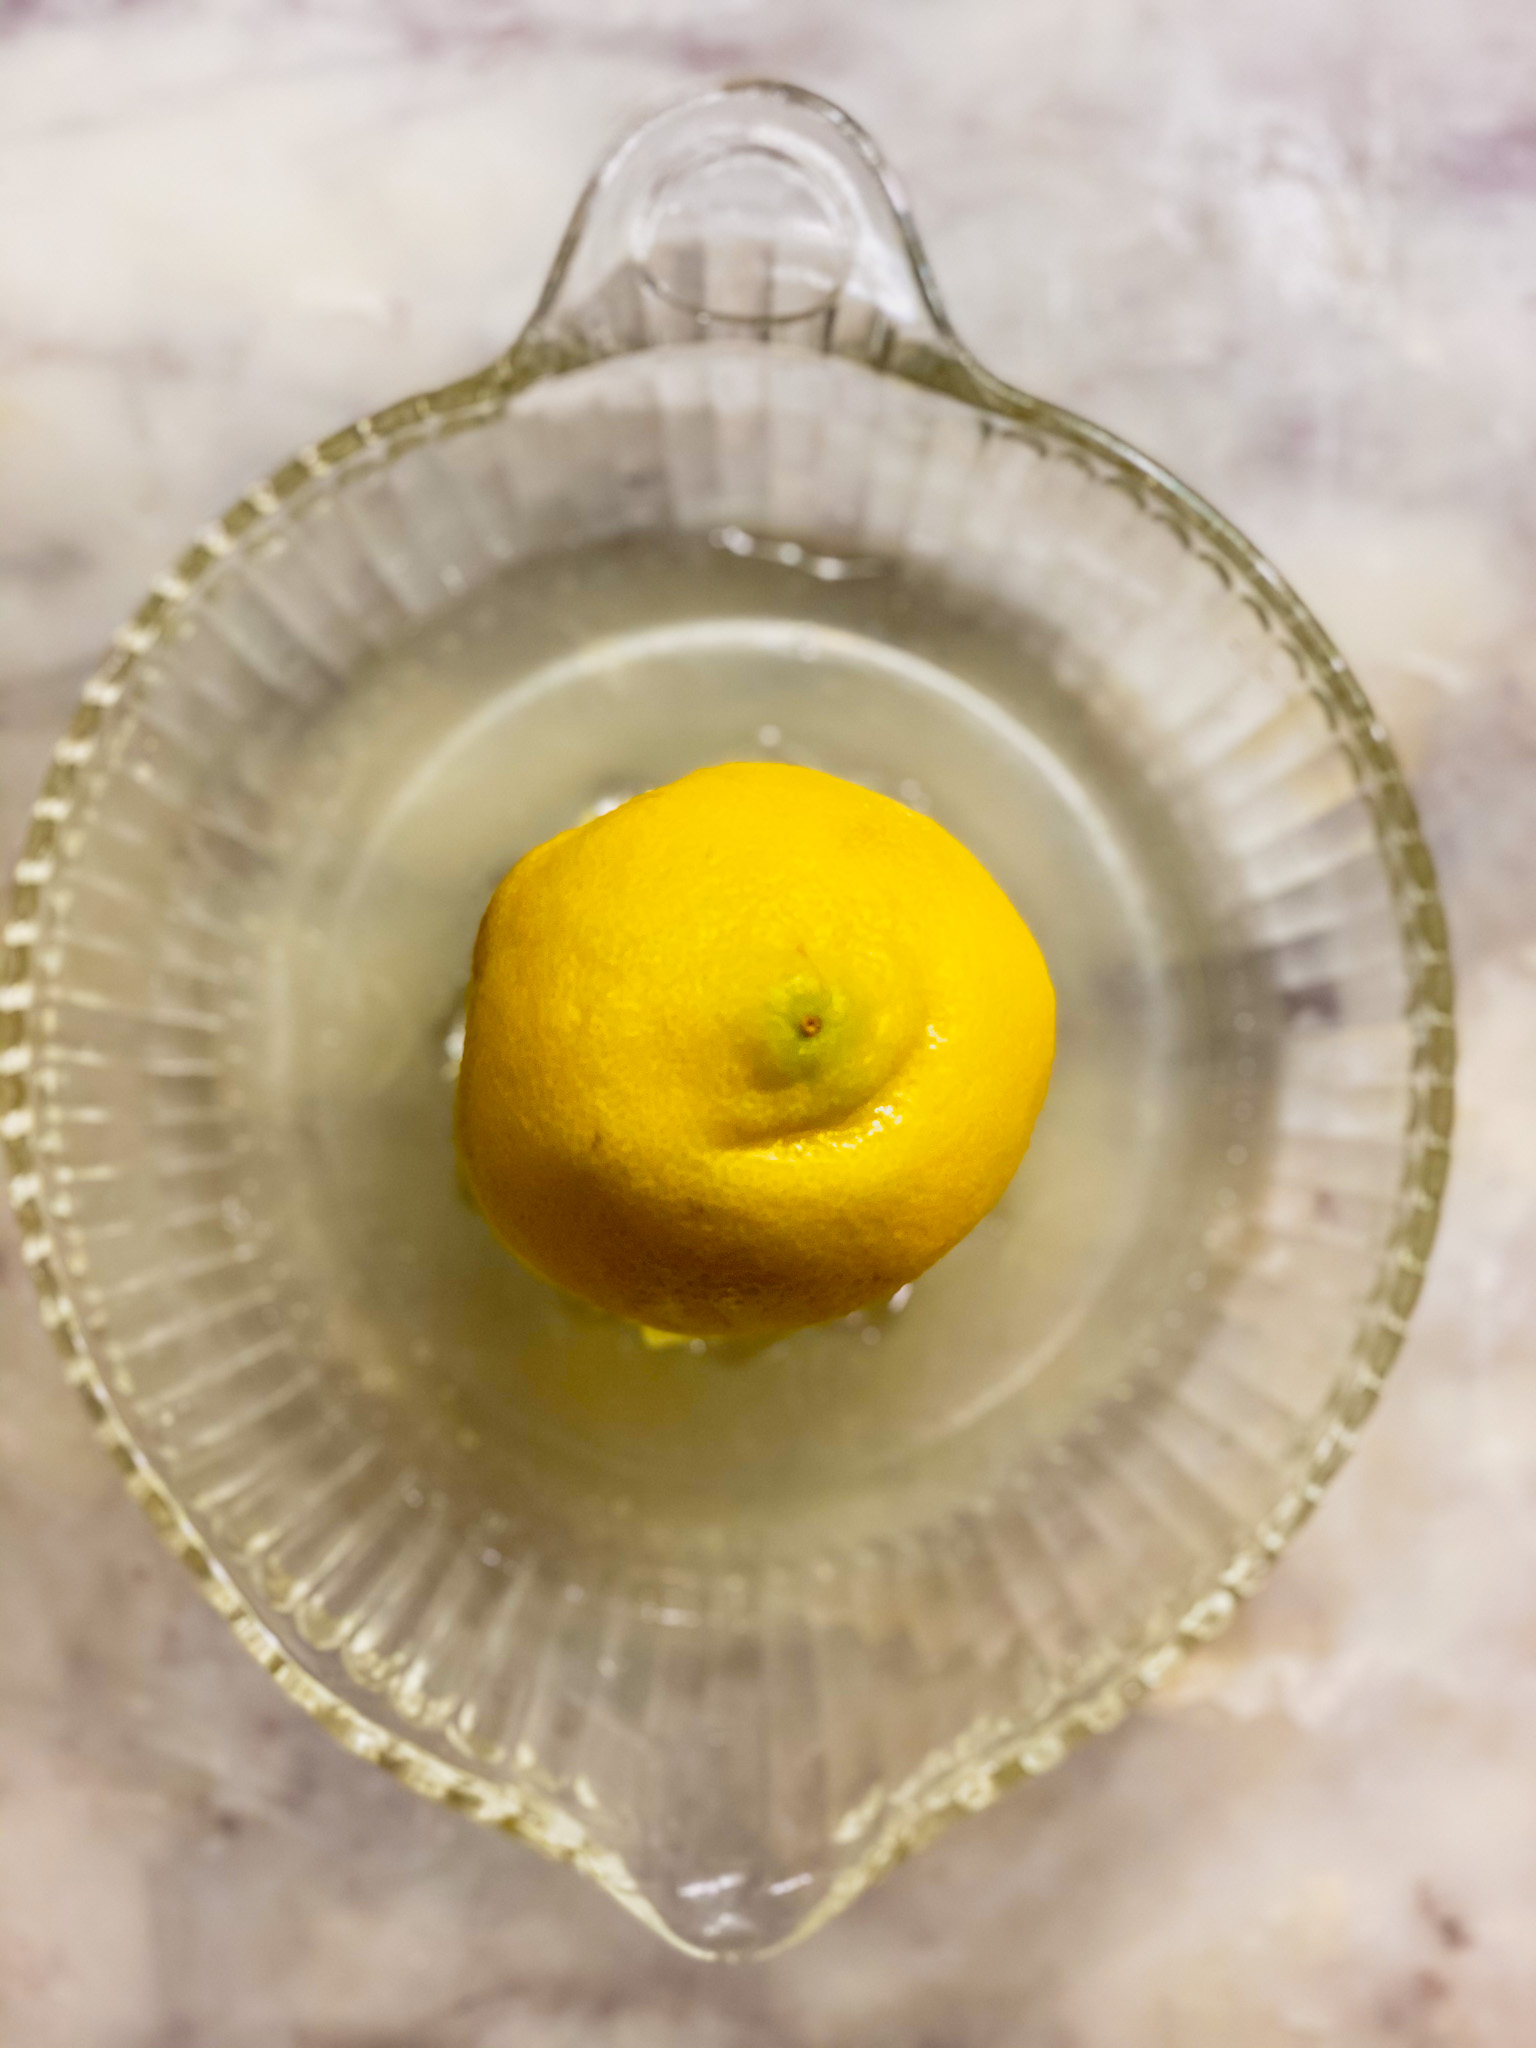 a lemon squeezed